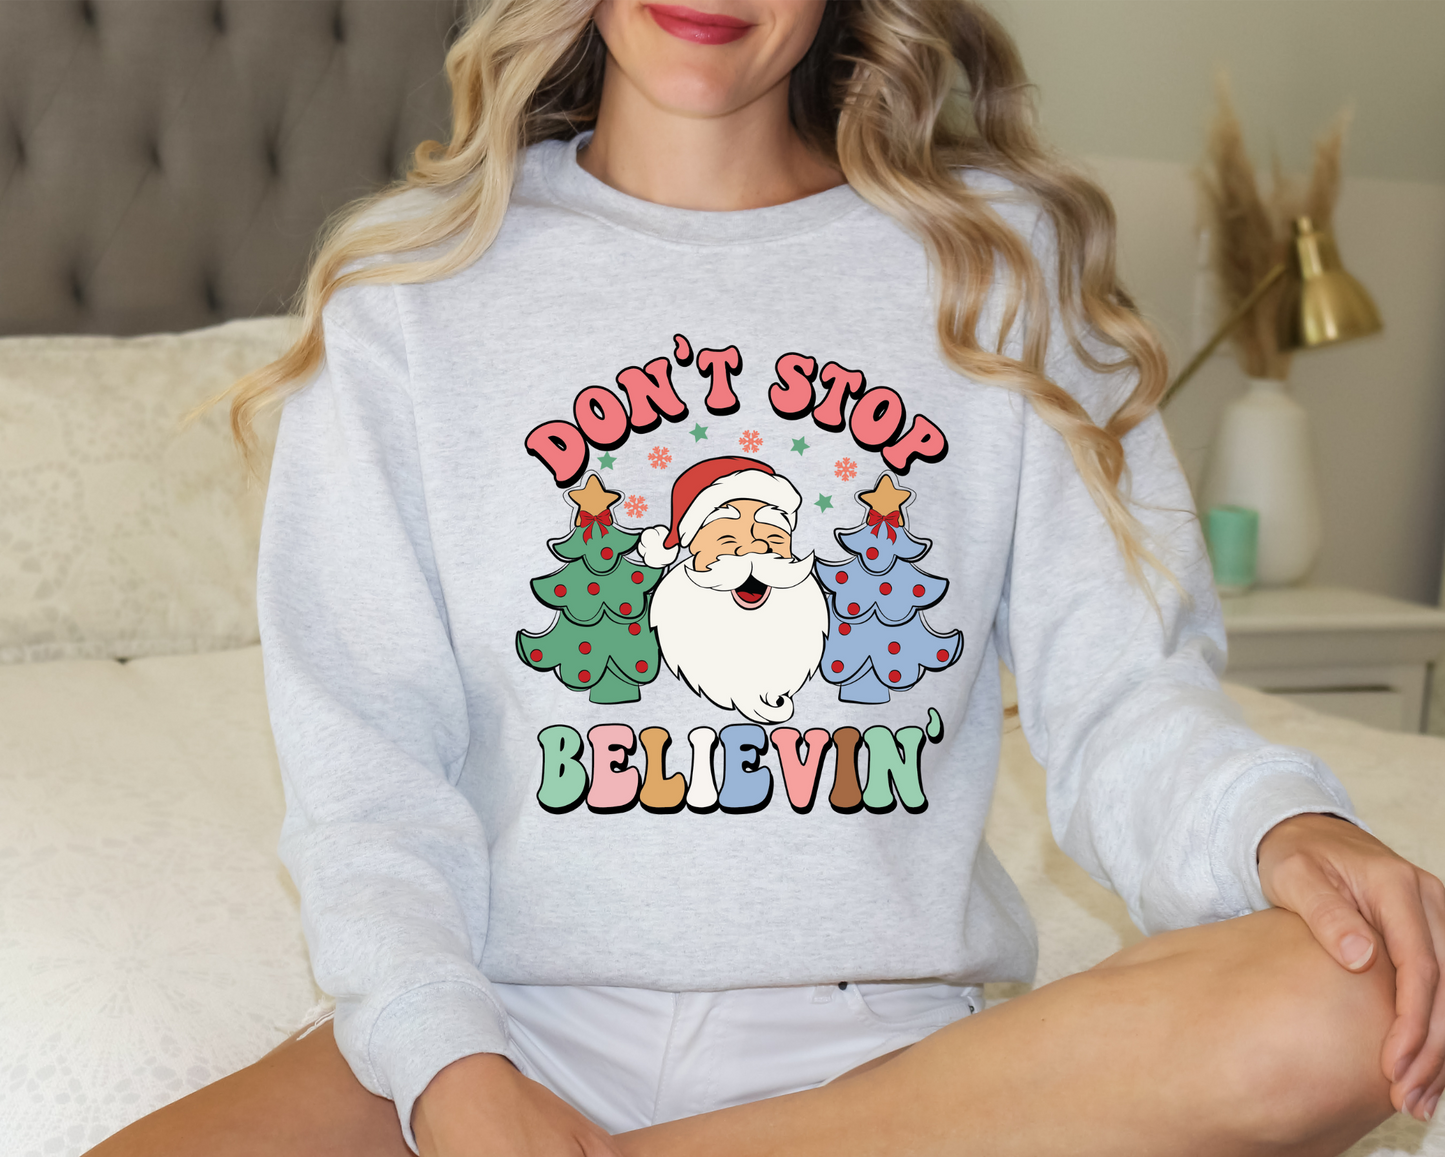 Don't Stop Believin' Sweatshirt